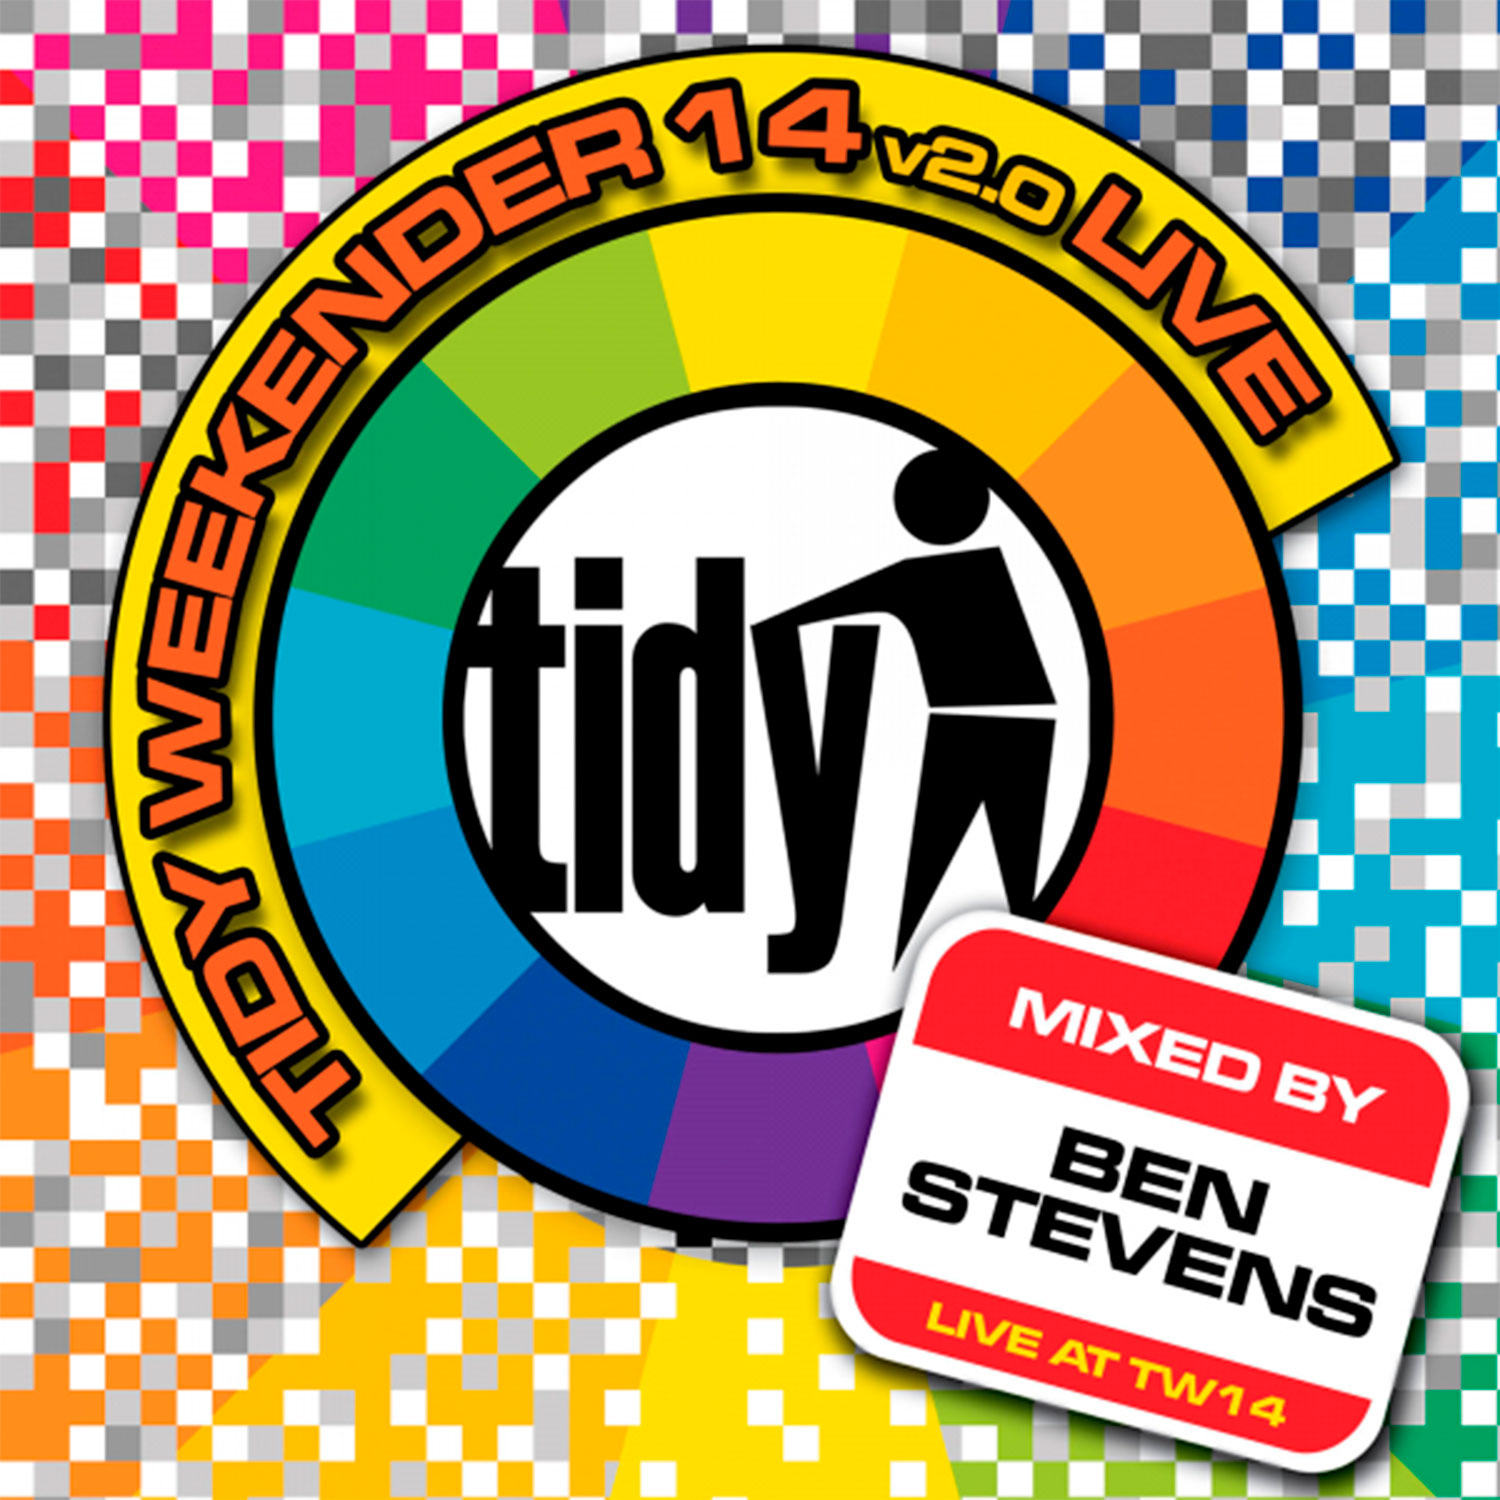 Tidy Weekender 14 v2.0 Live! - Ben Stevens